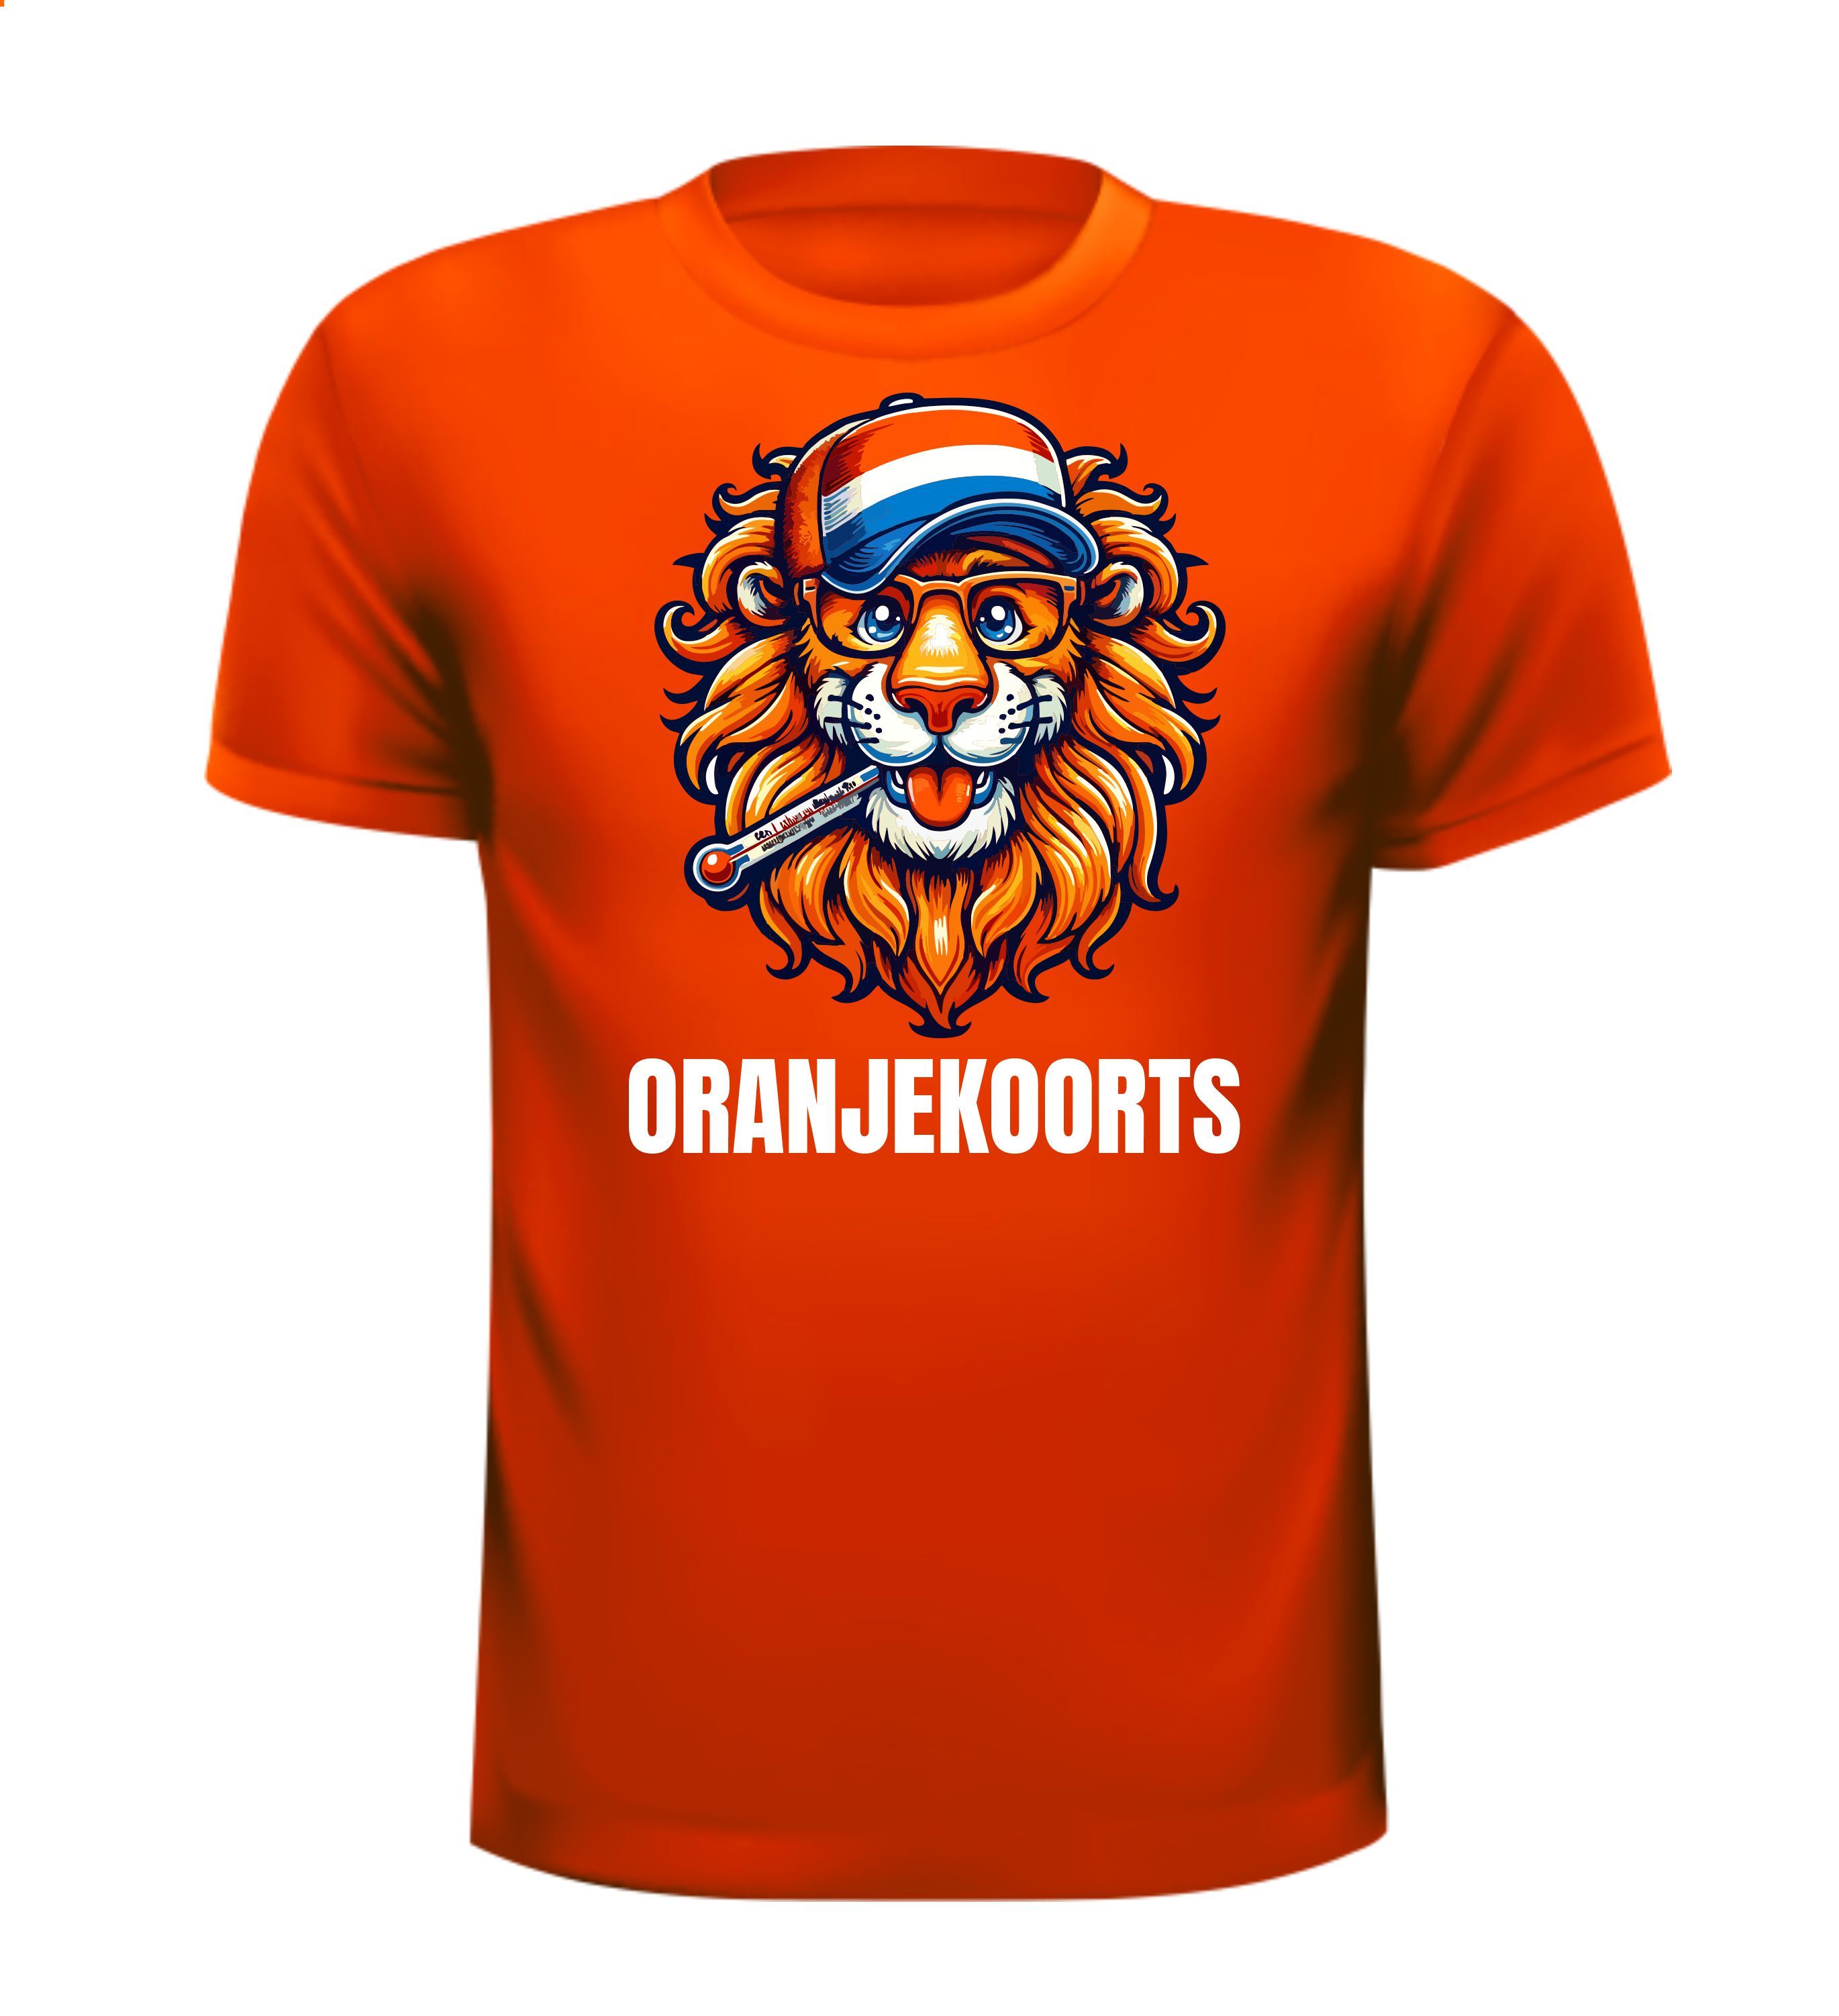 Haal de Leeuw in je Los! Met die oranjekoorts T-shirt voor het EK of WK